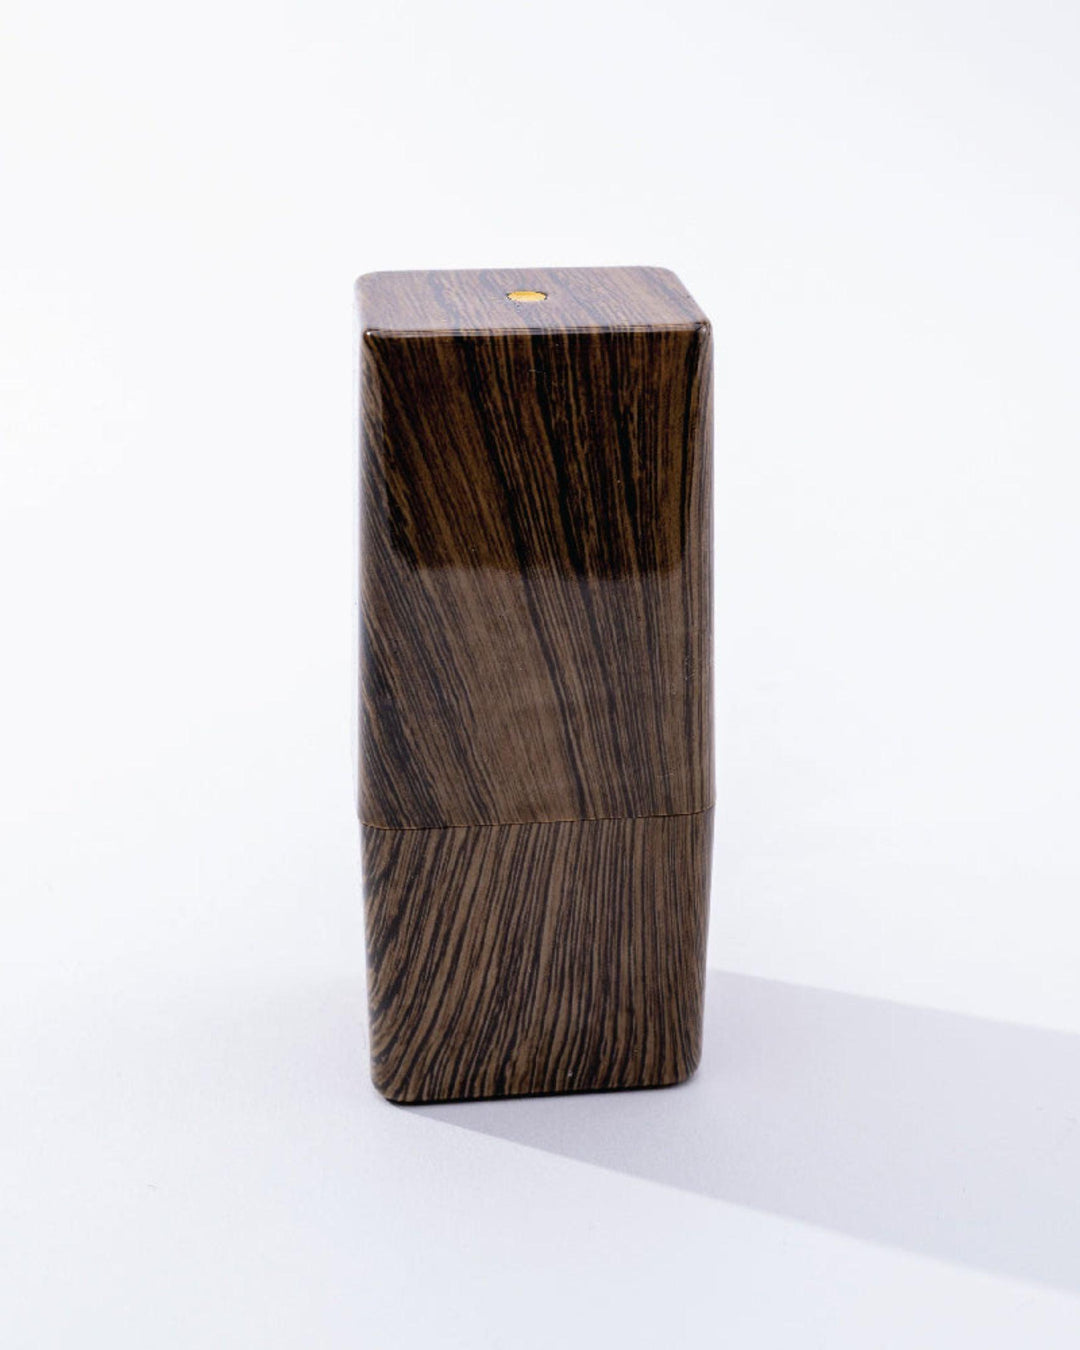 wood grain luxury storage accessories